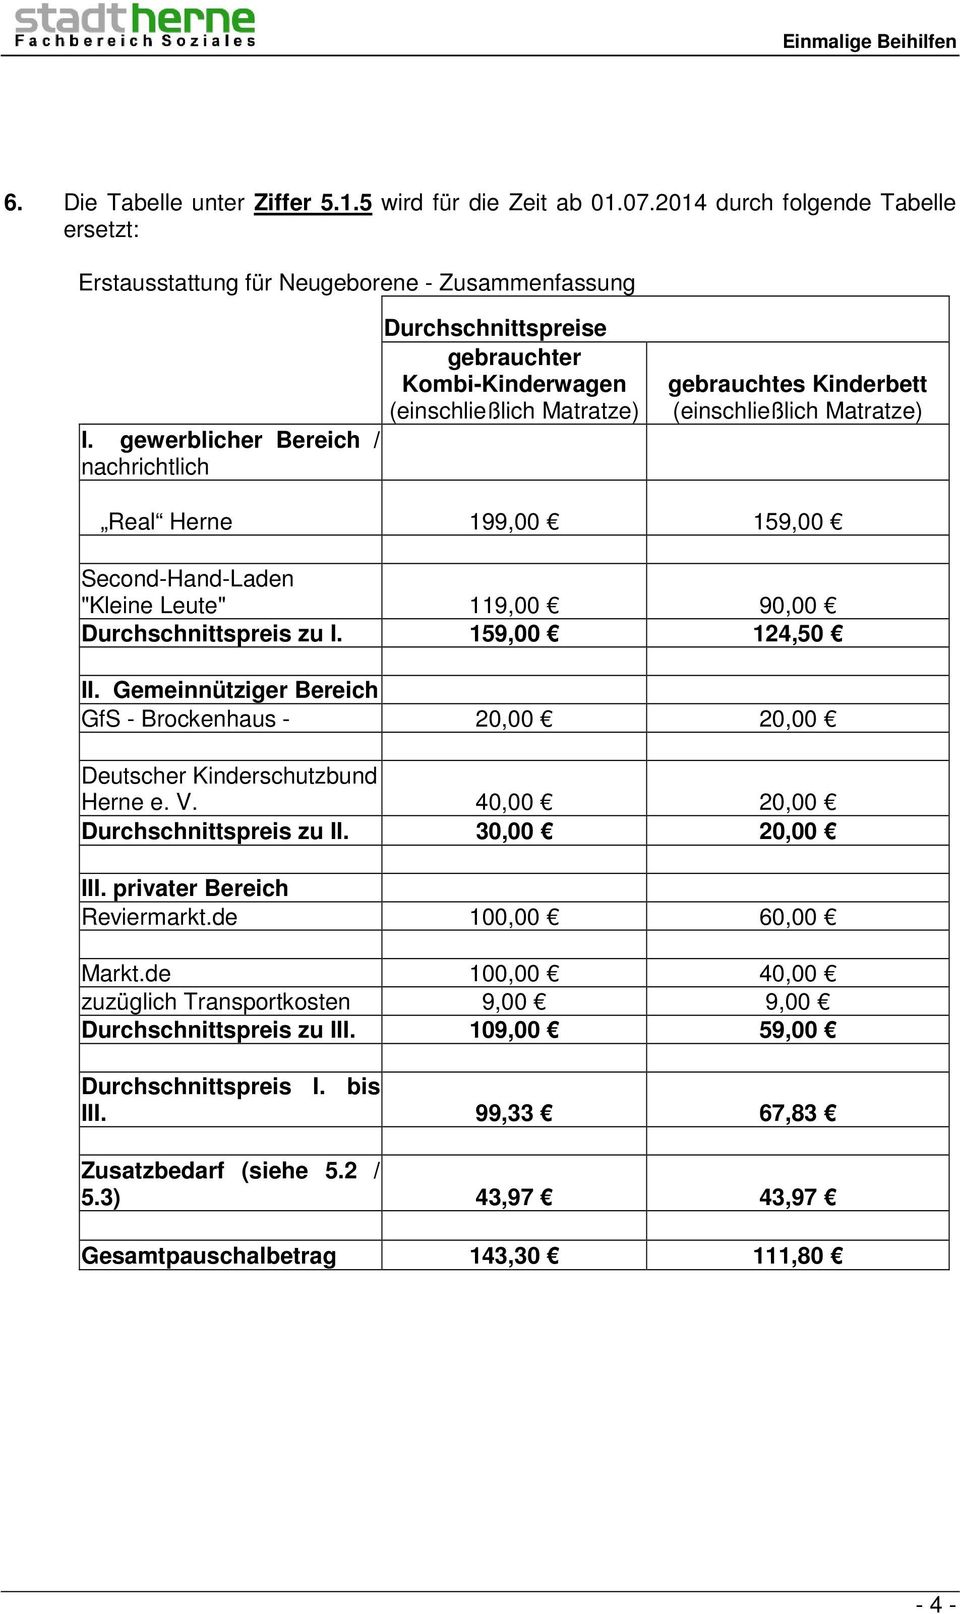 Second-Hand-Laden "Kleine Leute" 119,00 90,00 Durchschnittspreis zu I. 159,00 124,50 II. Gemeinnütziger Bereich GfS - Brockenhaus - 20,00 20,00 Deutscher Kinderschutzbund Herne e. V.